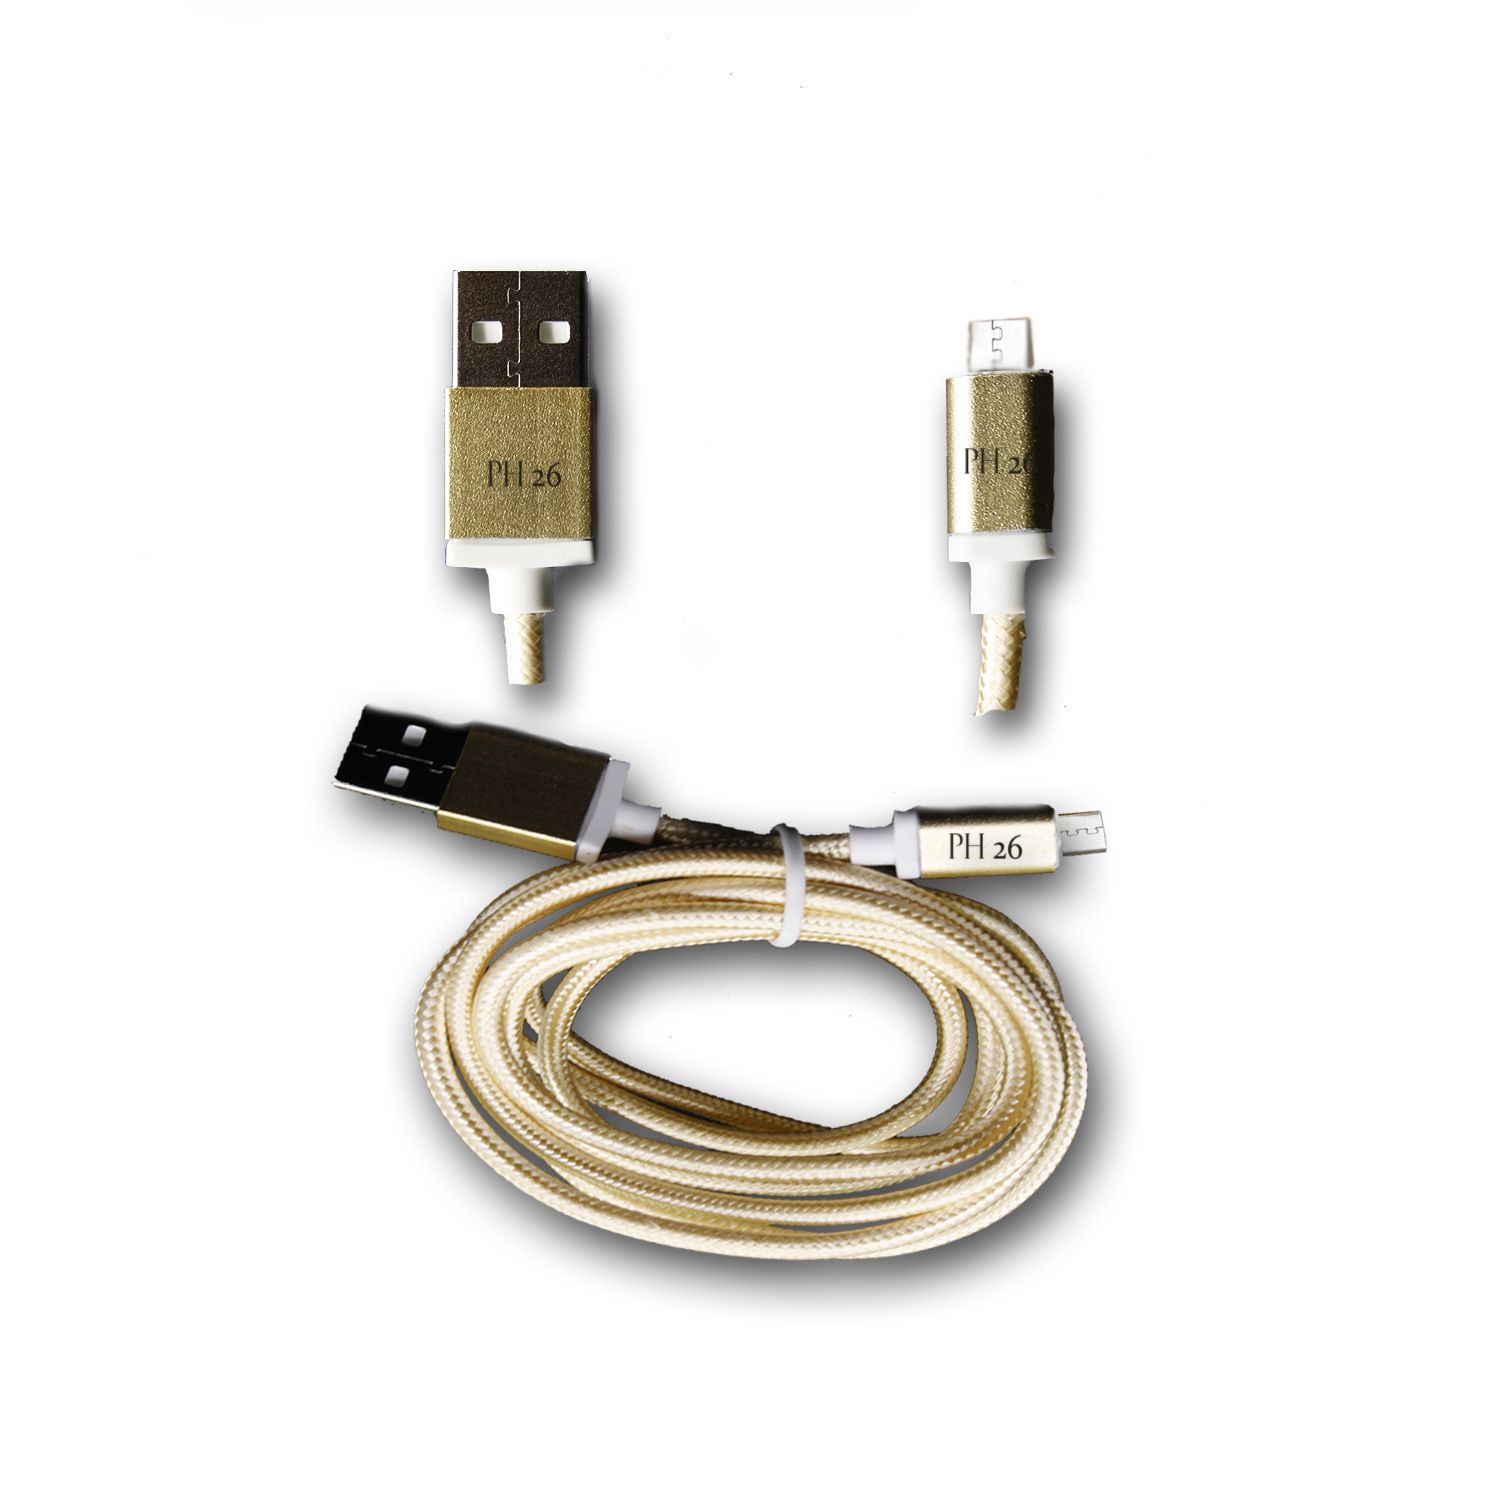 Infinix Alpha Marvel X502 Câble Data OR 1M en nylon tressé ultra Résistant (garantie 12 mois) Micro USB pour charge, synchronisation et transfert de données by PH26 ®